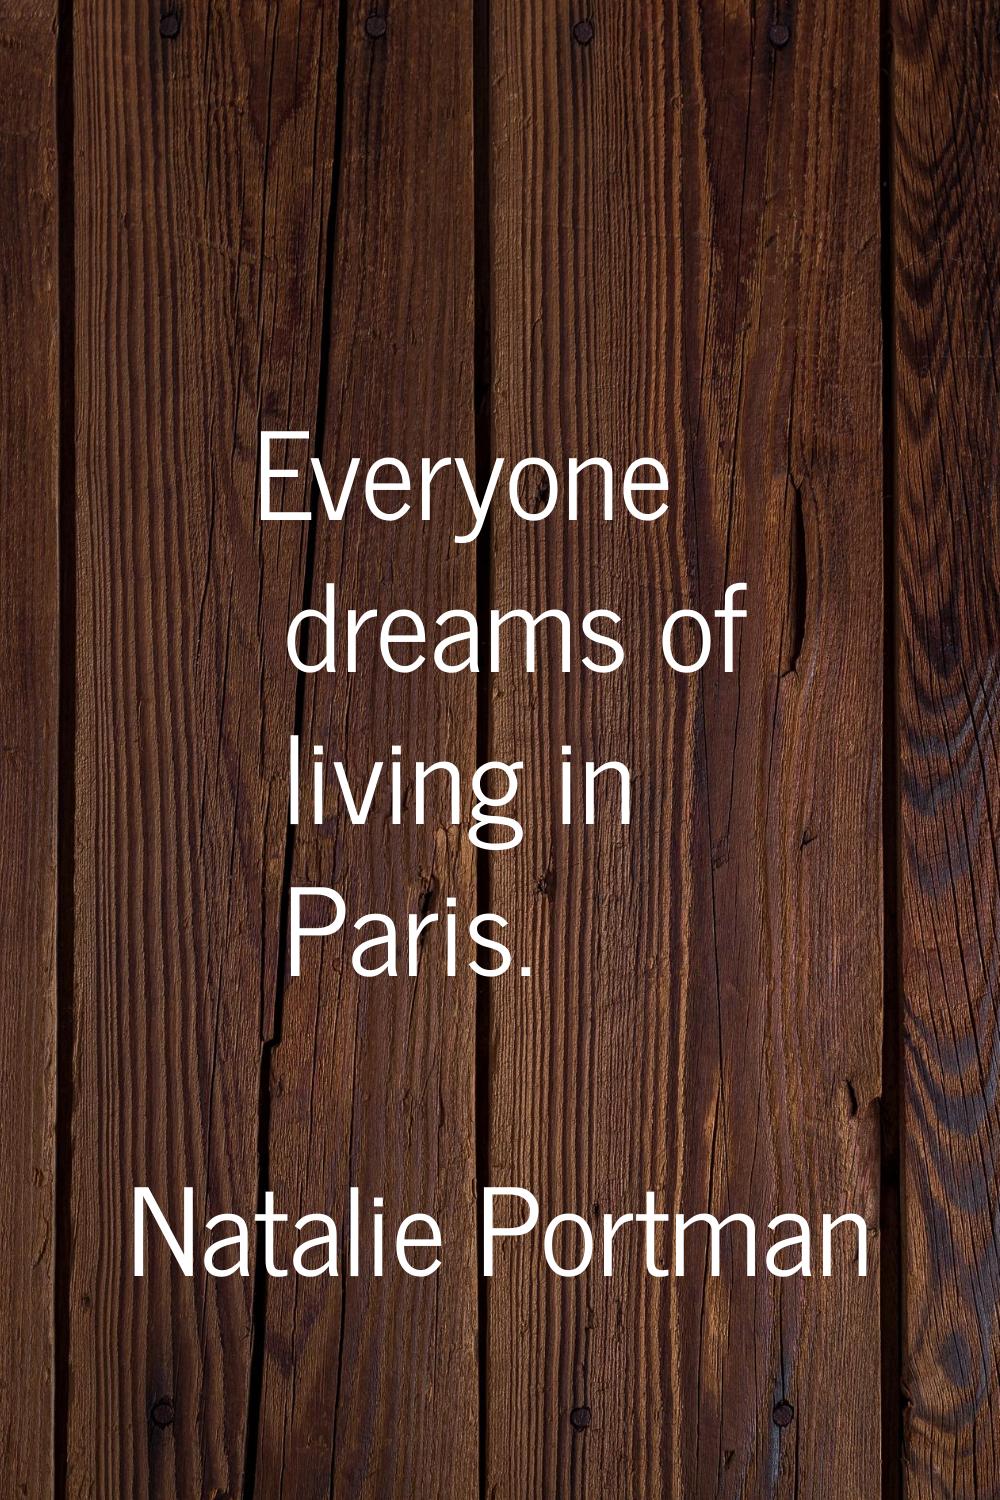 Everyone dreams of living in Paris.